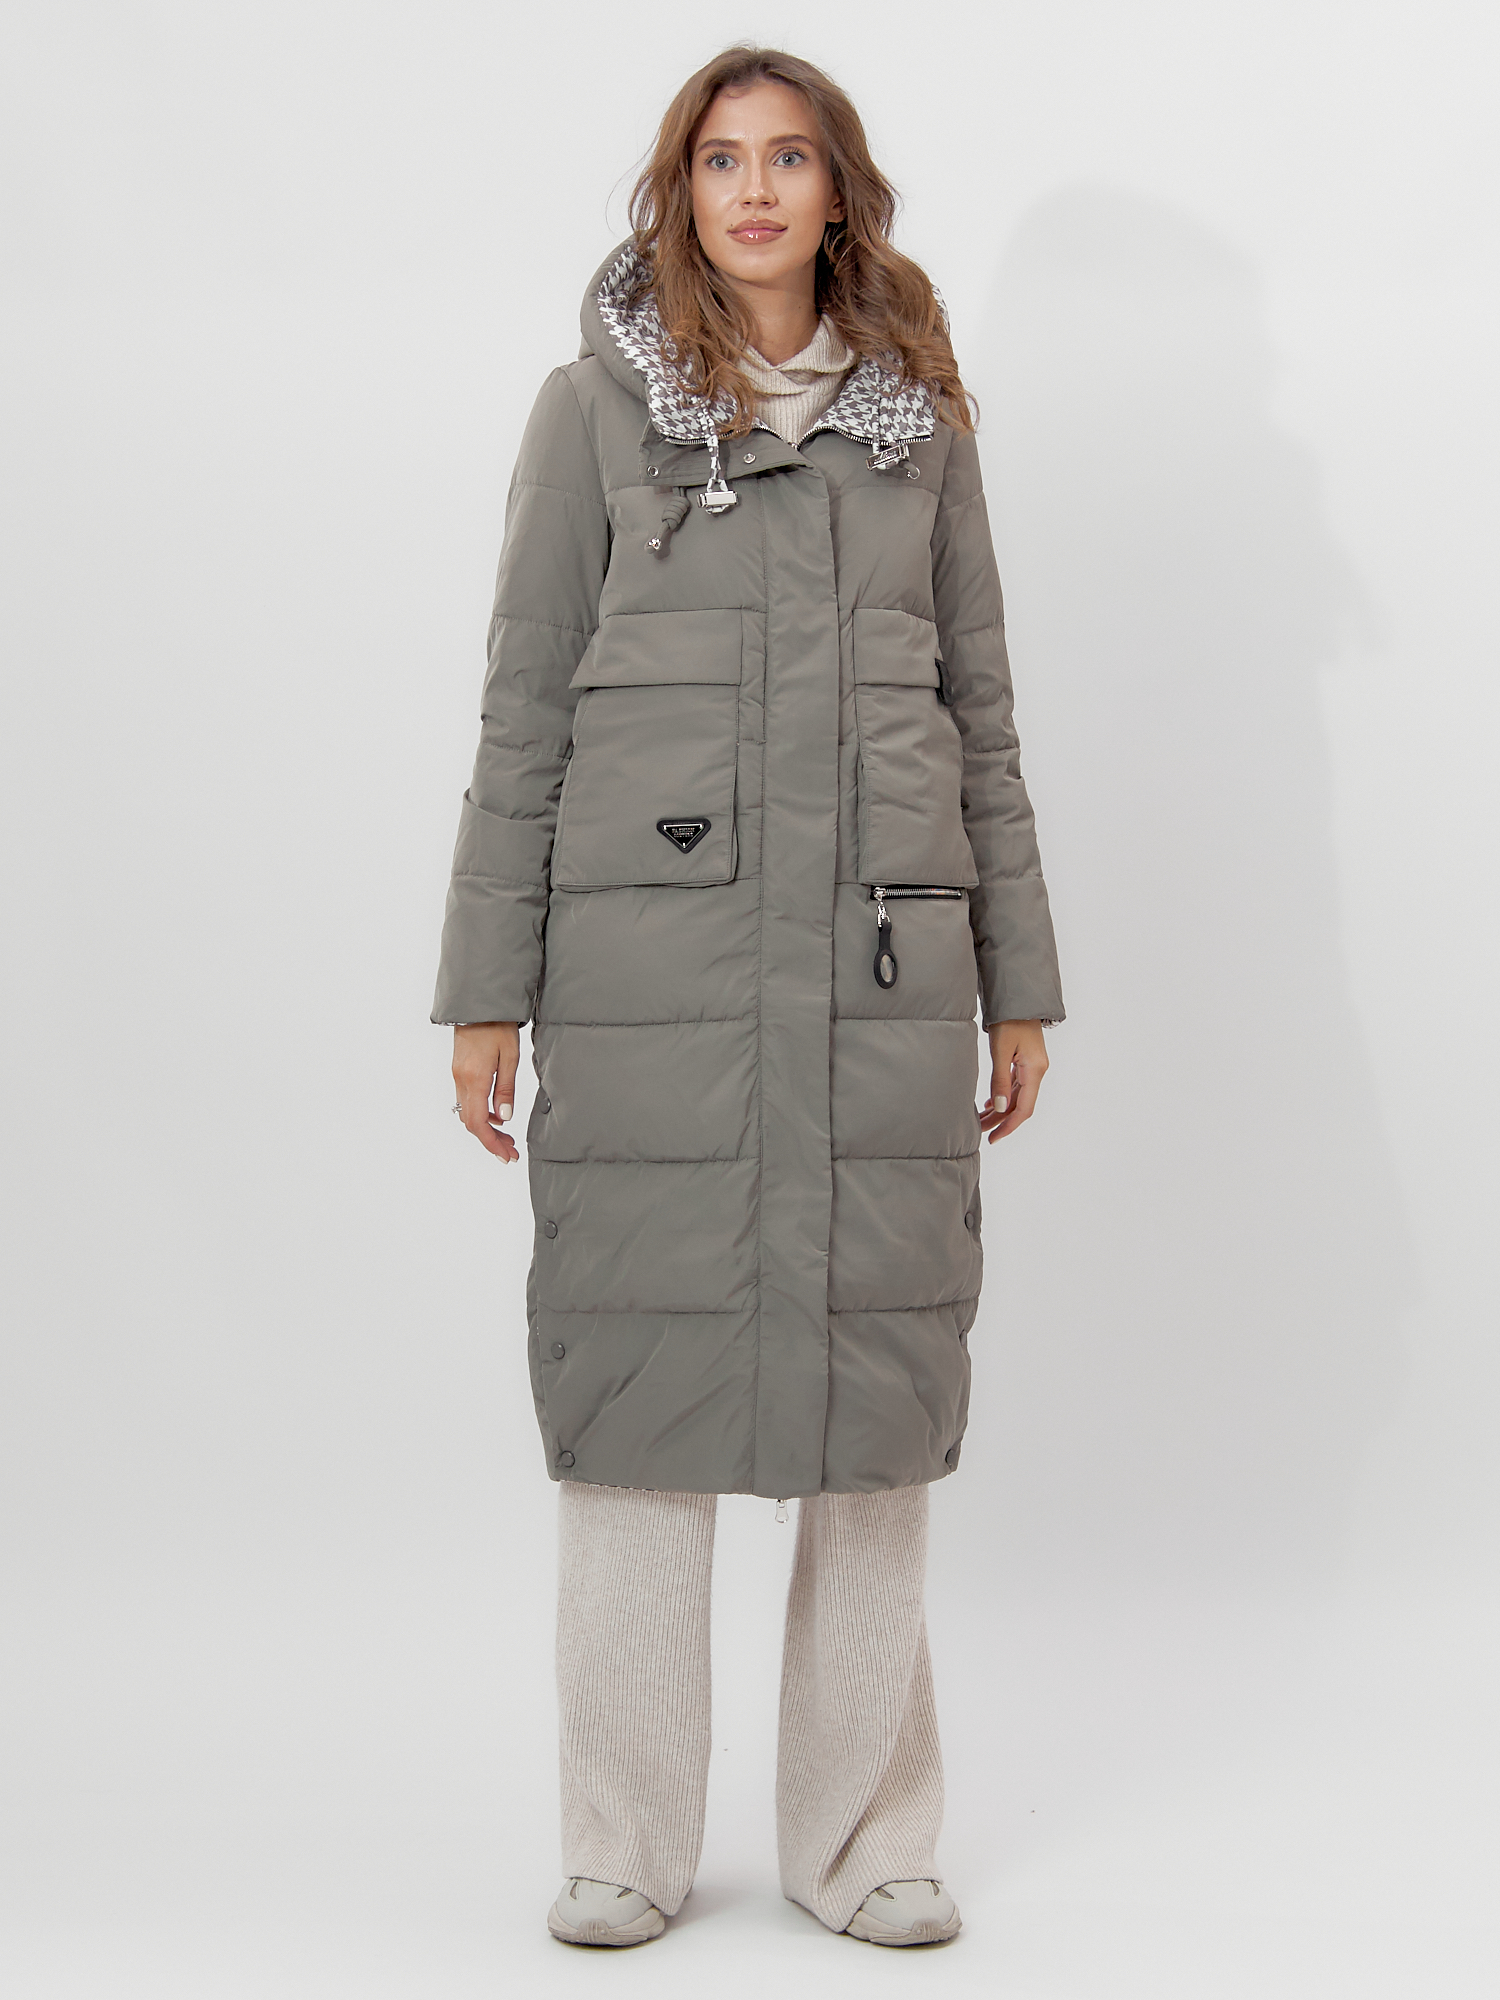 Купить Пальто утепленное двухстороннее женское цвета хаки 112272Kh